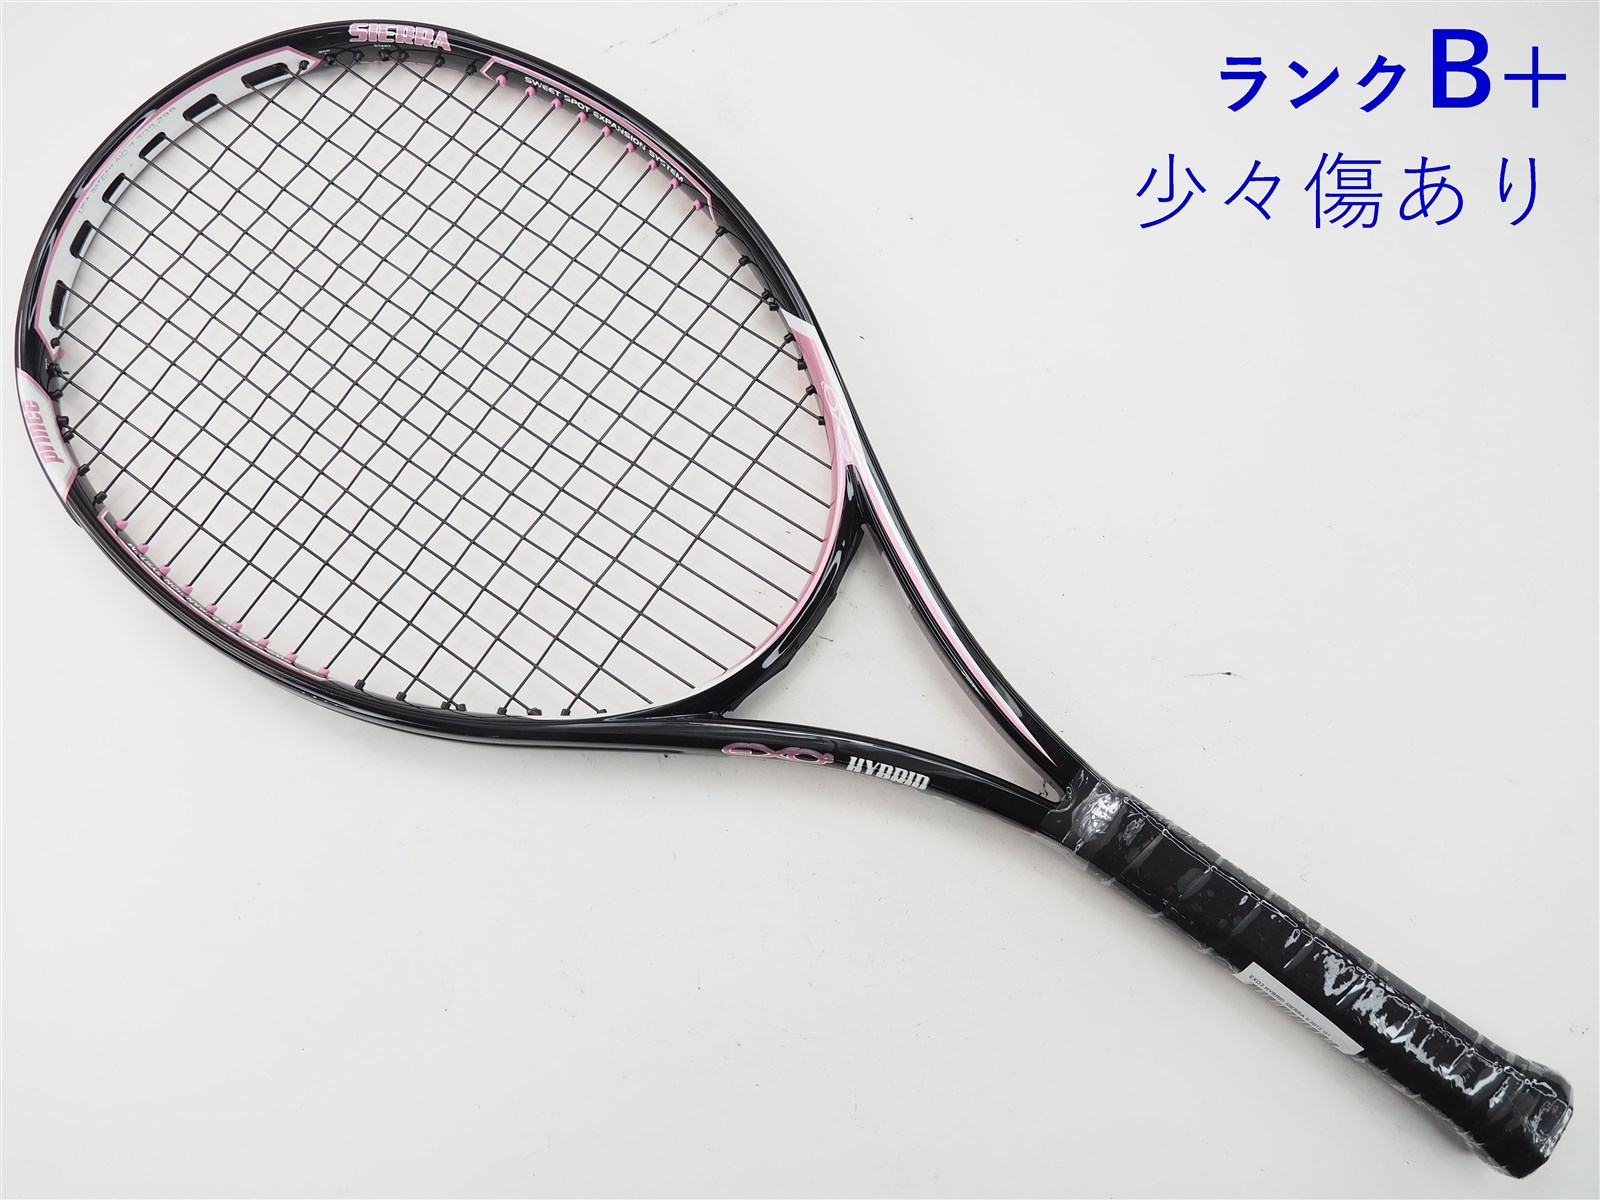 テニスラケット プリンス プリンス エックス 105 (270g) 2018年モデル (G2)PRINCE Prince X 105 (270g) 2018